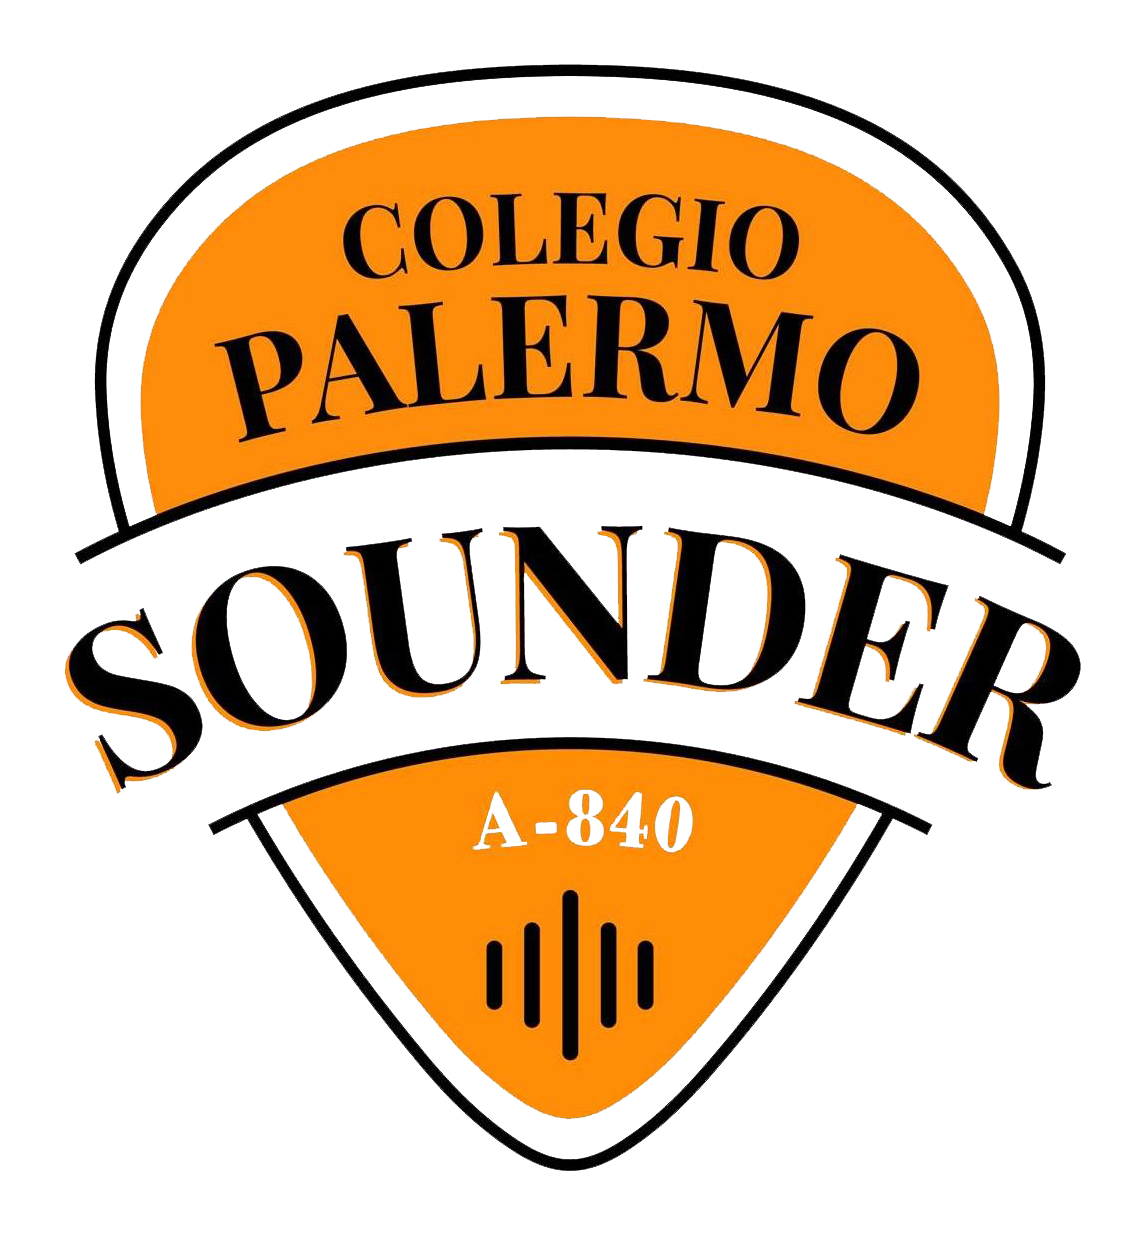 Colegio Palermo Sounder (A-840)